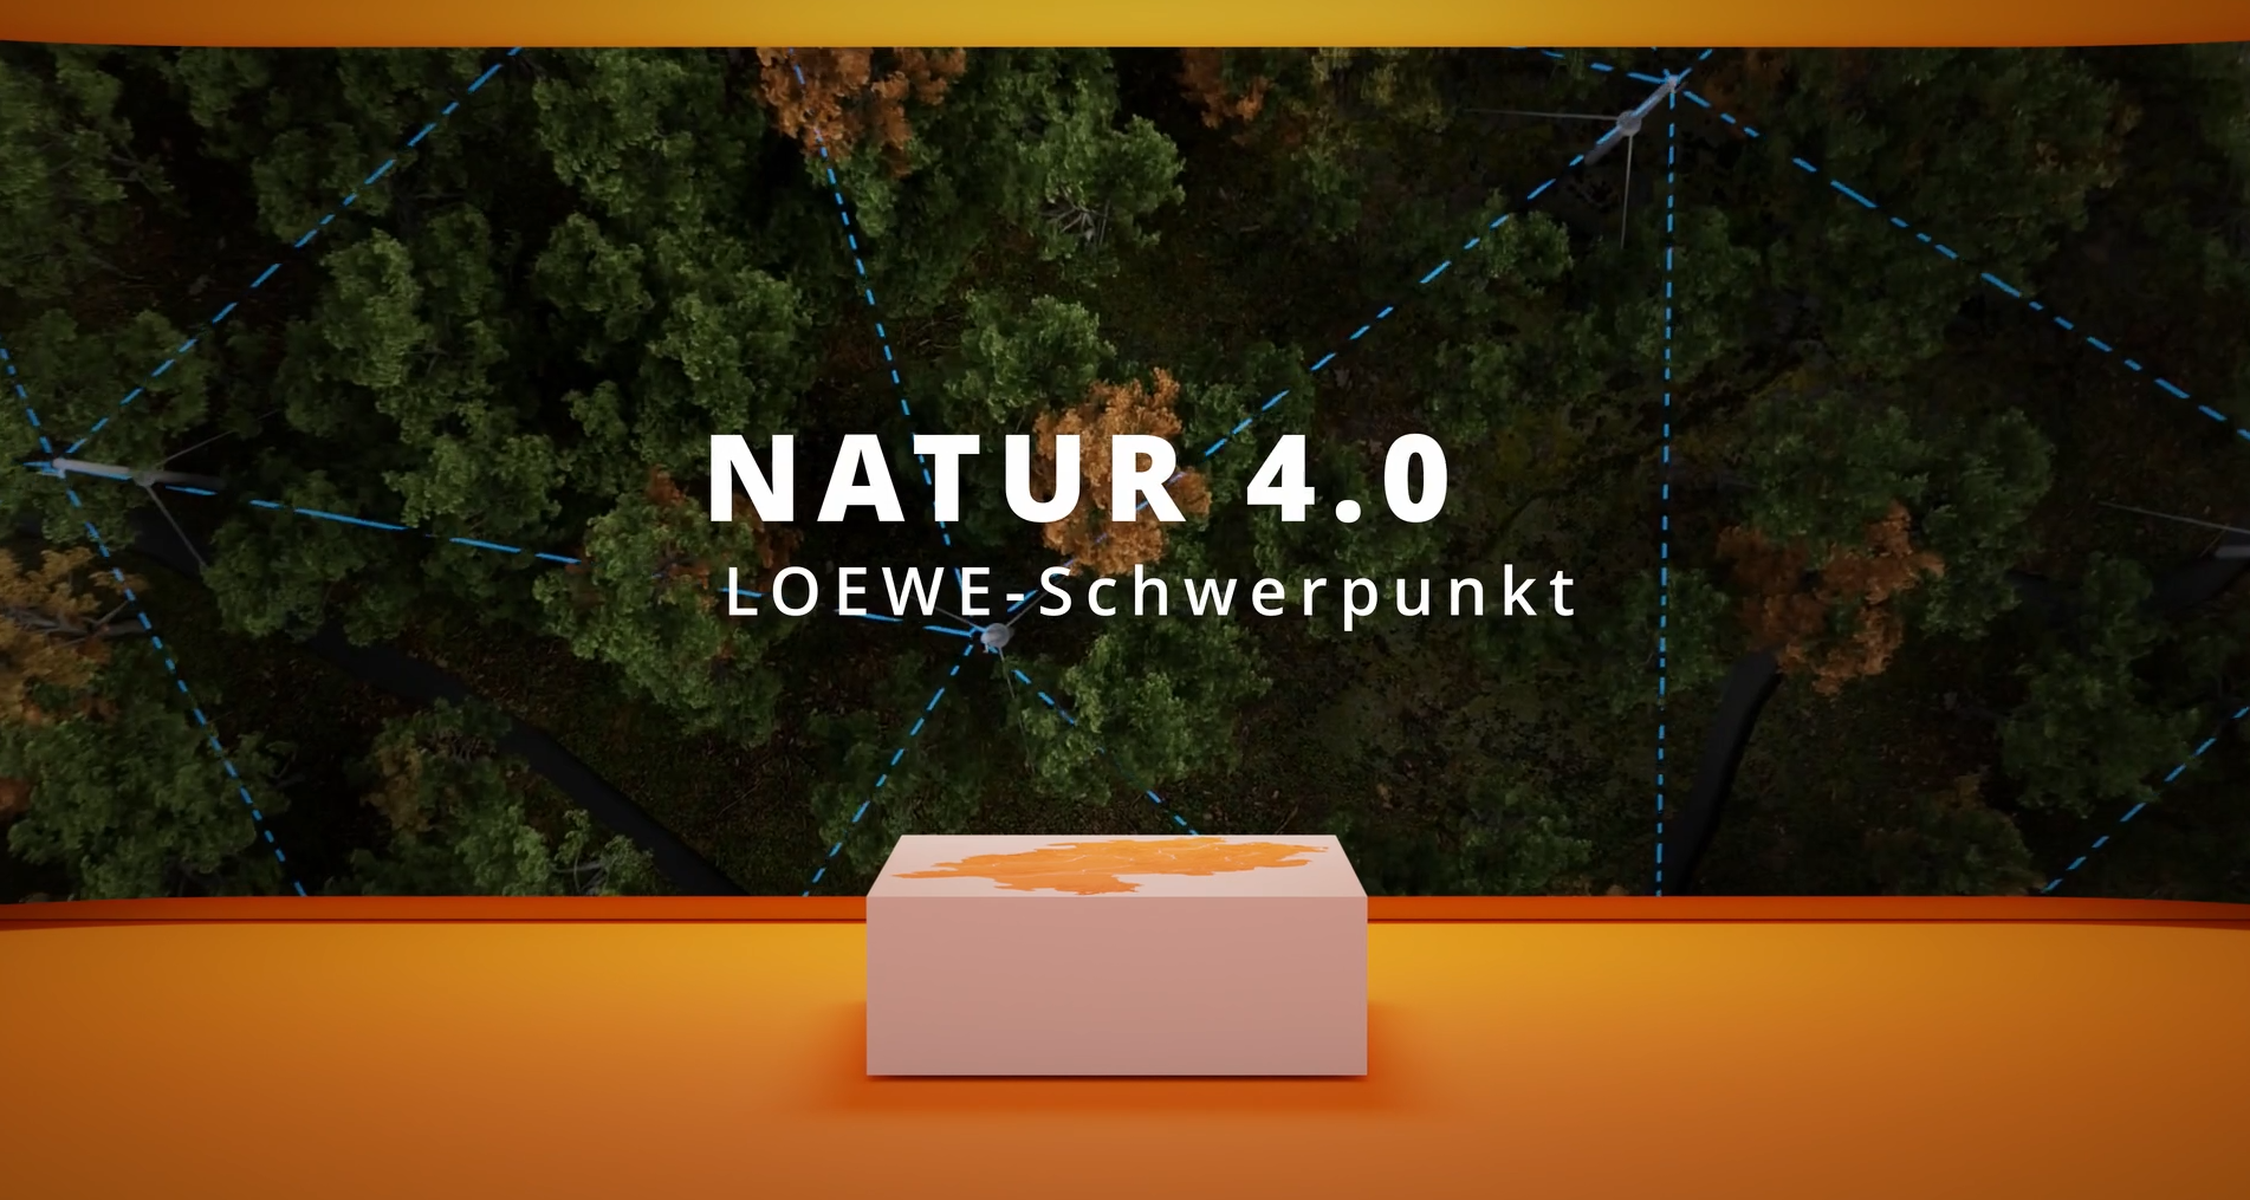 Das Natur 4.0 Projekt im Video kurz und bündig